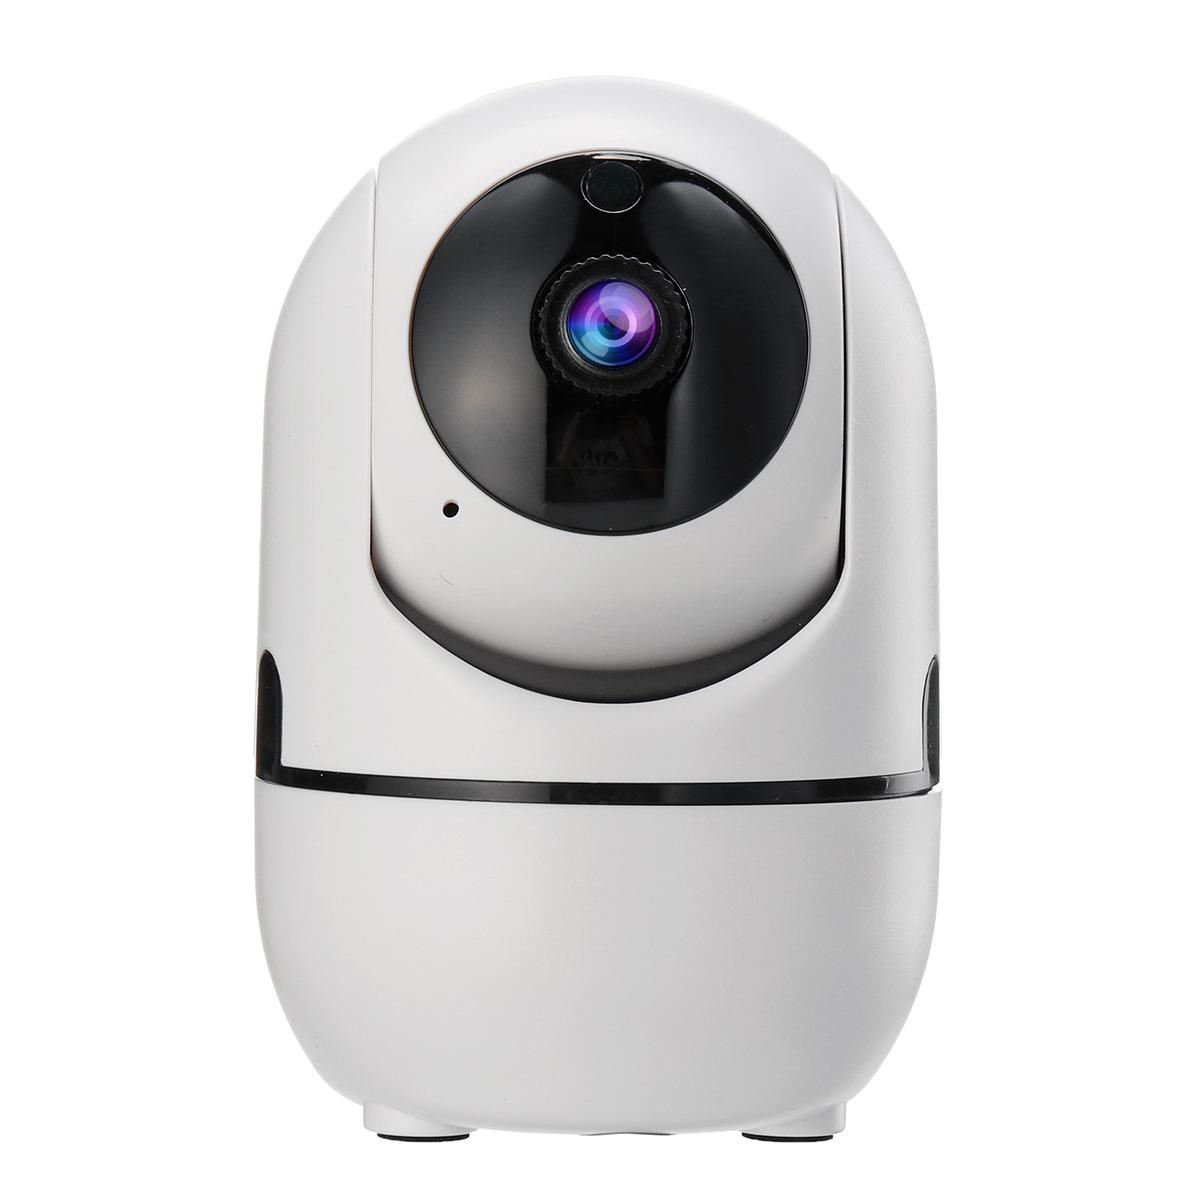 

1080P Mini WiFi Home Security камера Ночное видение обнаружения движения для Alexa Echo